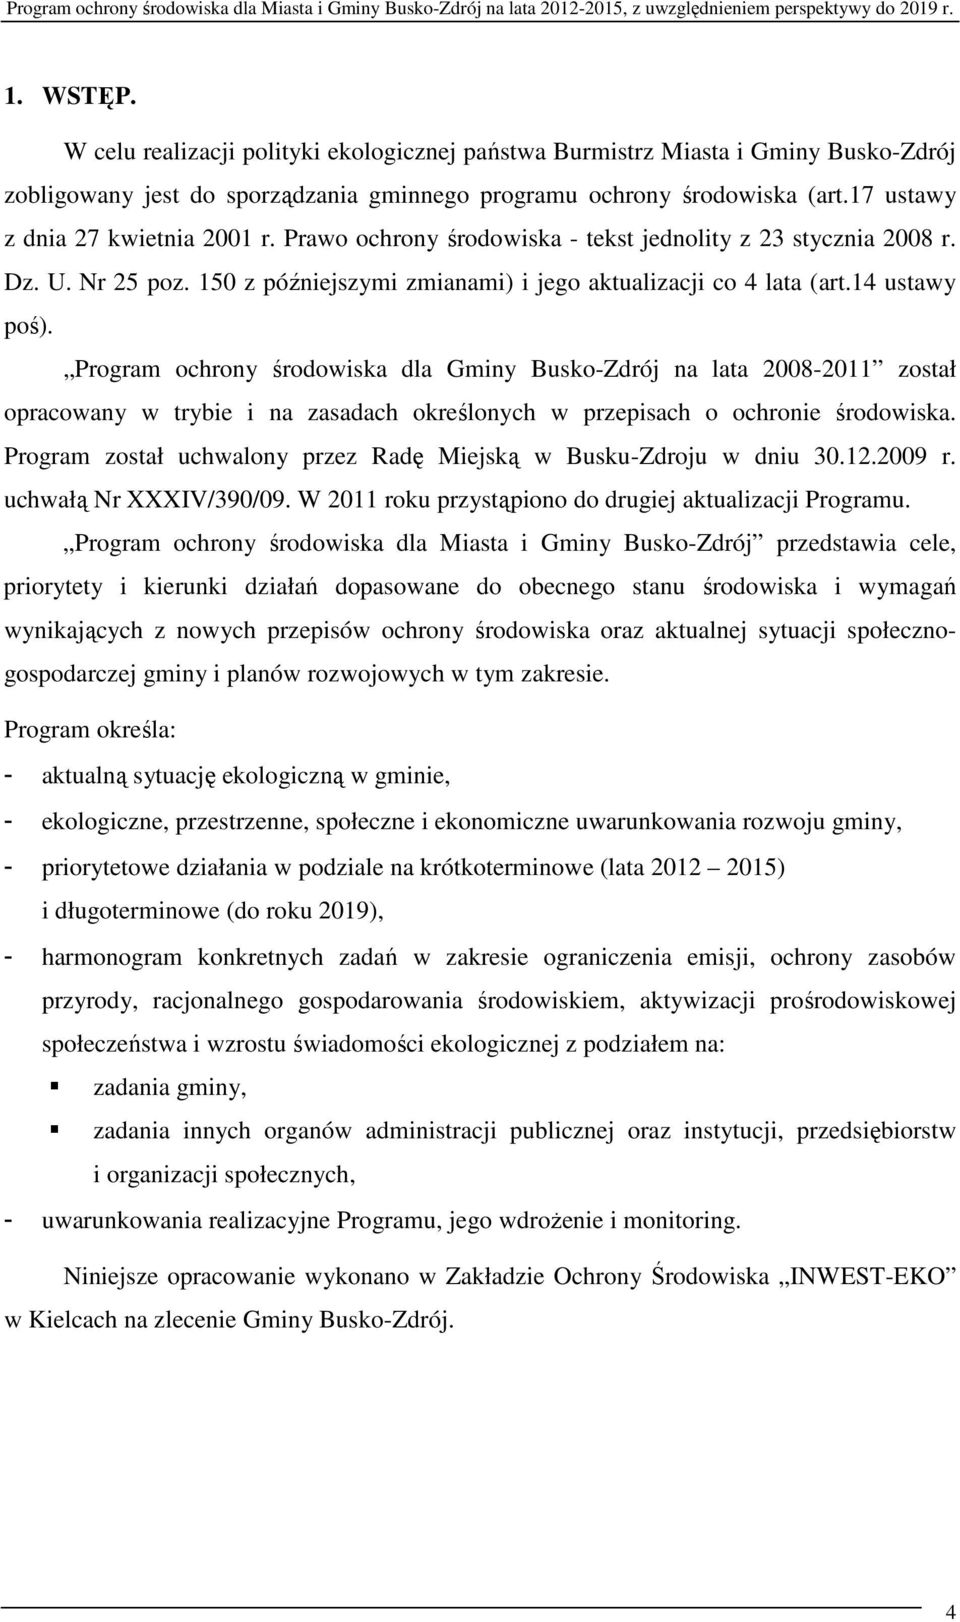 Program ochrony środowiska dla Gminy Busko-Zdrój na lata 2008-2011 został opracowany w trybie i na zasadach określonych w przepisach o ochronie środowiska.